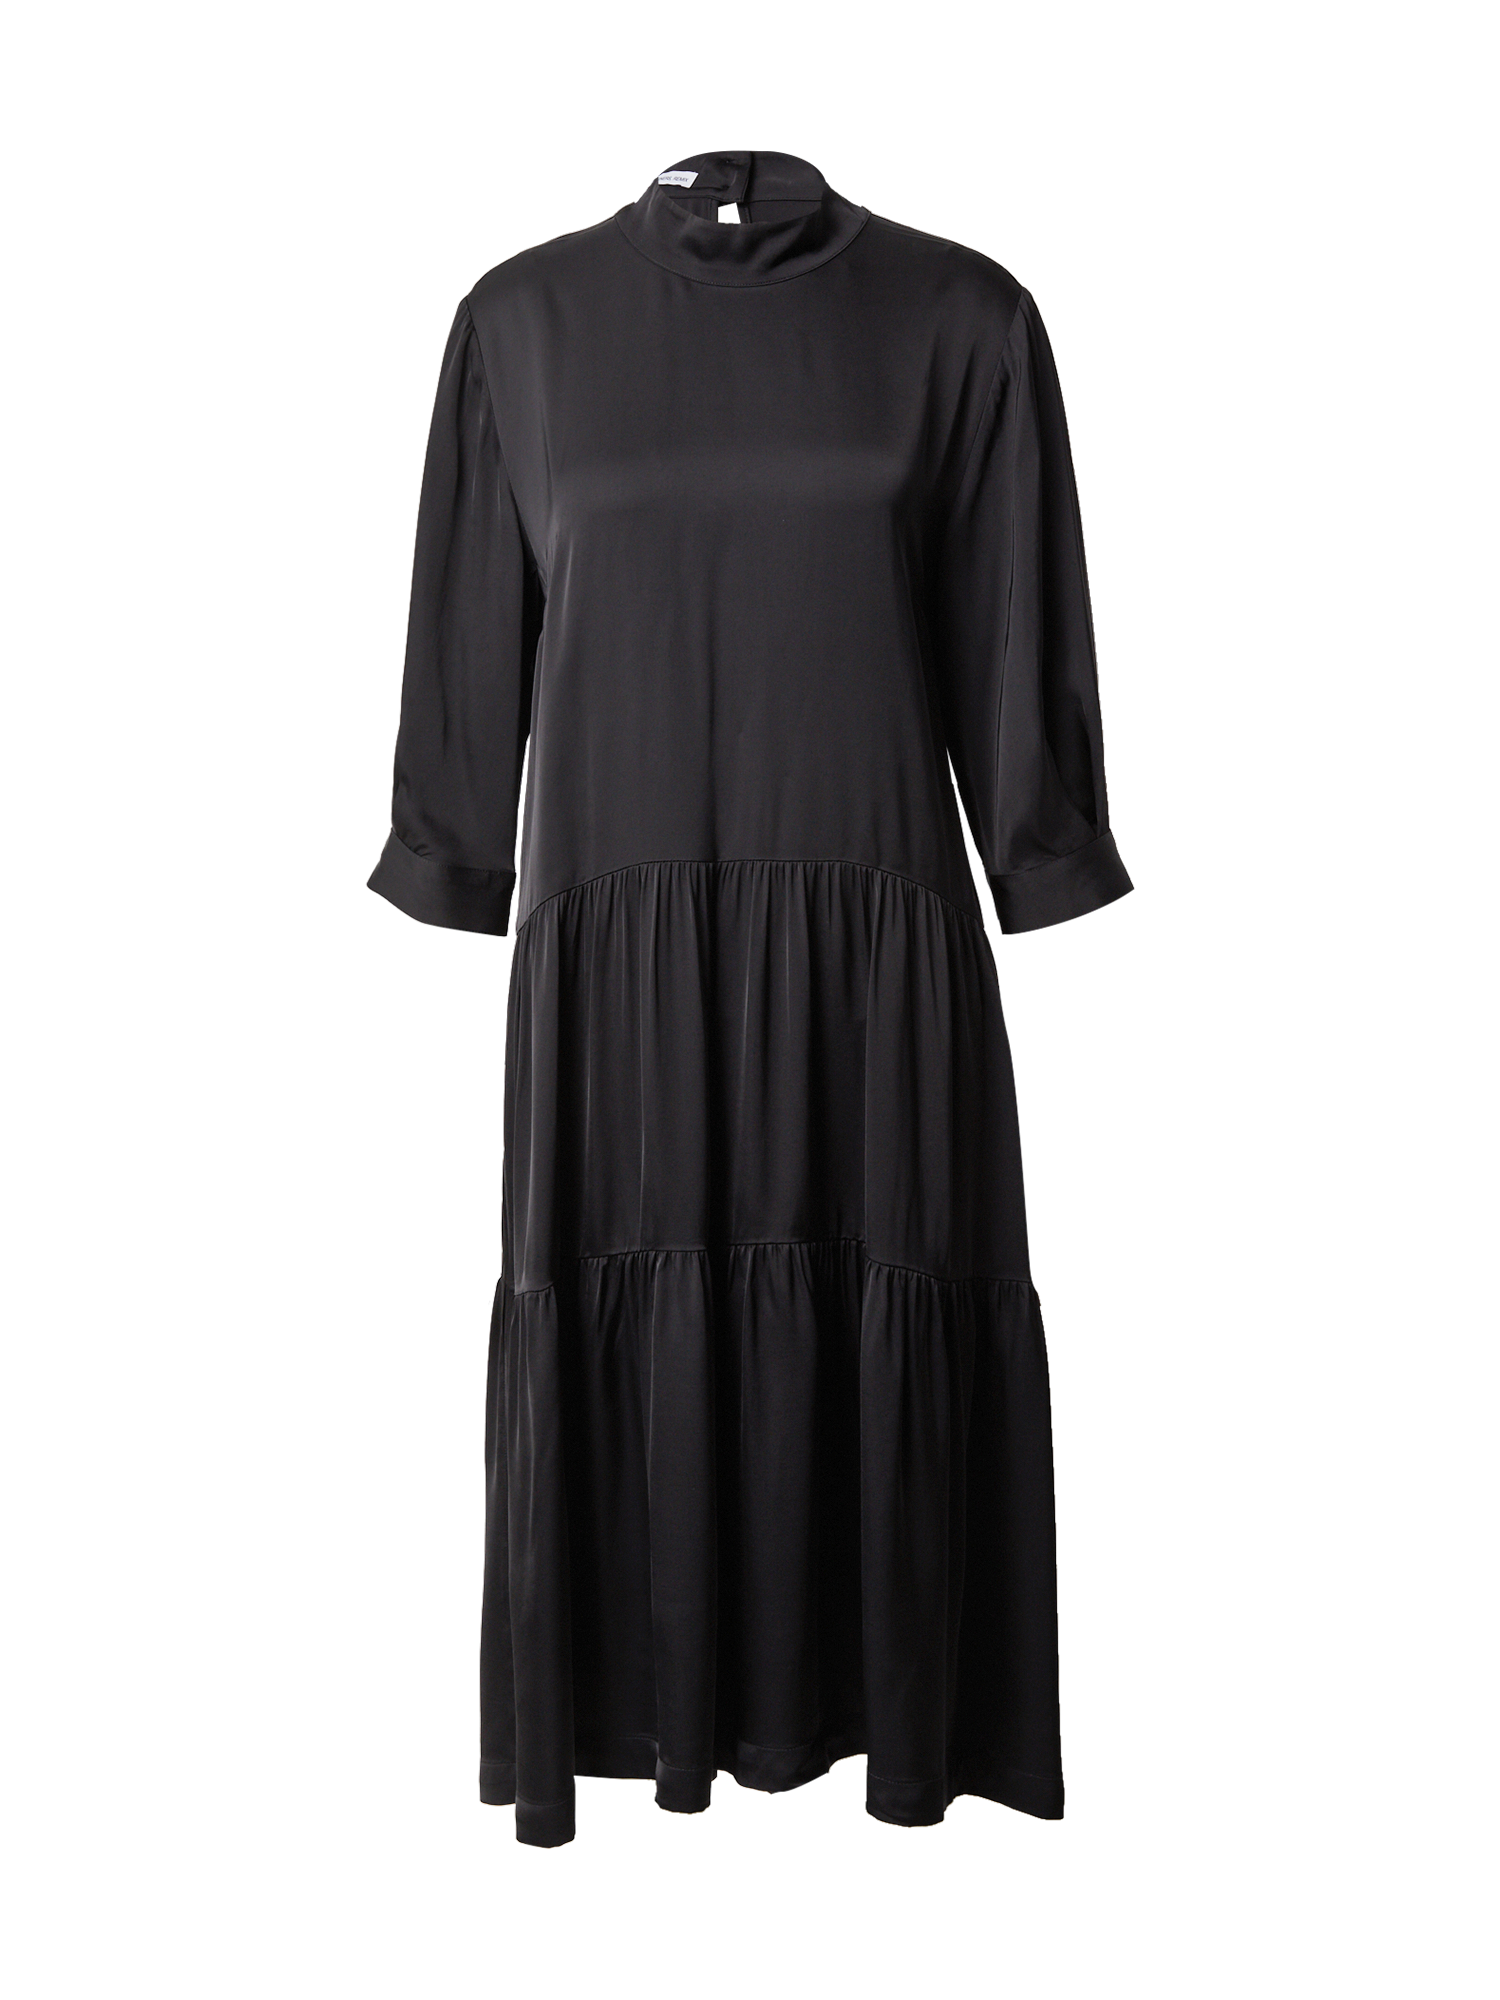 Odzież Kobiety Designers Remix Sukienka Emme w kolorze Czarnym 